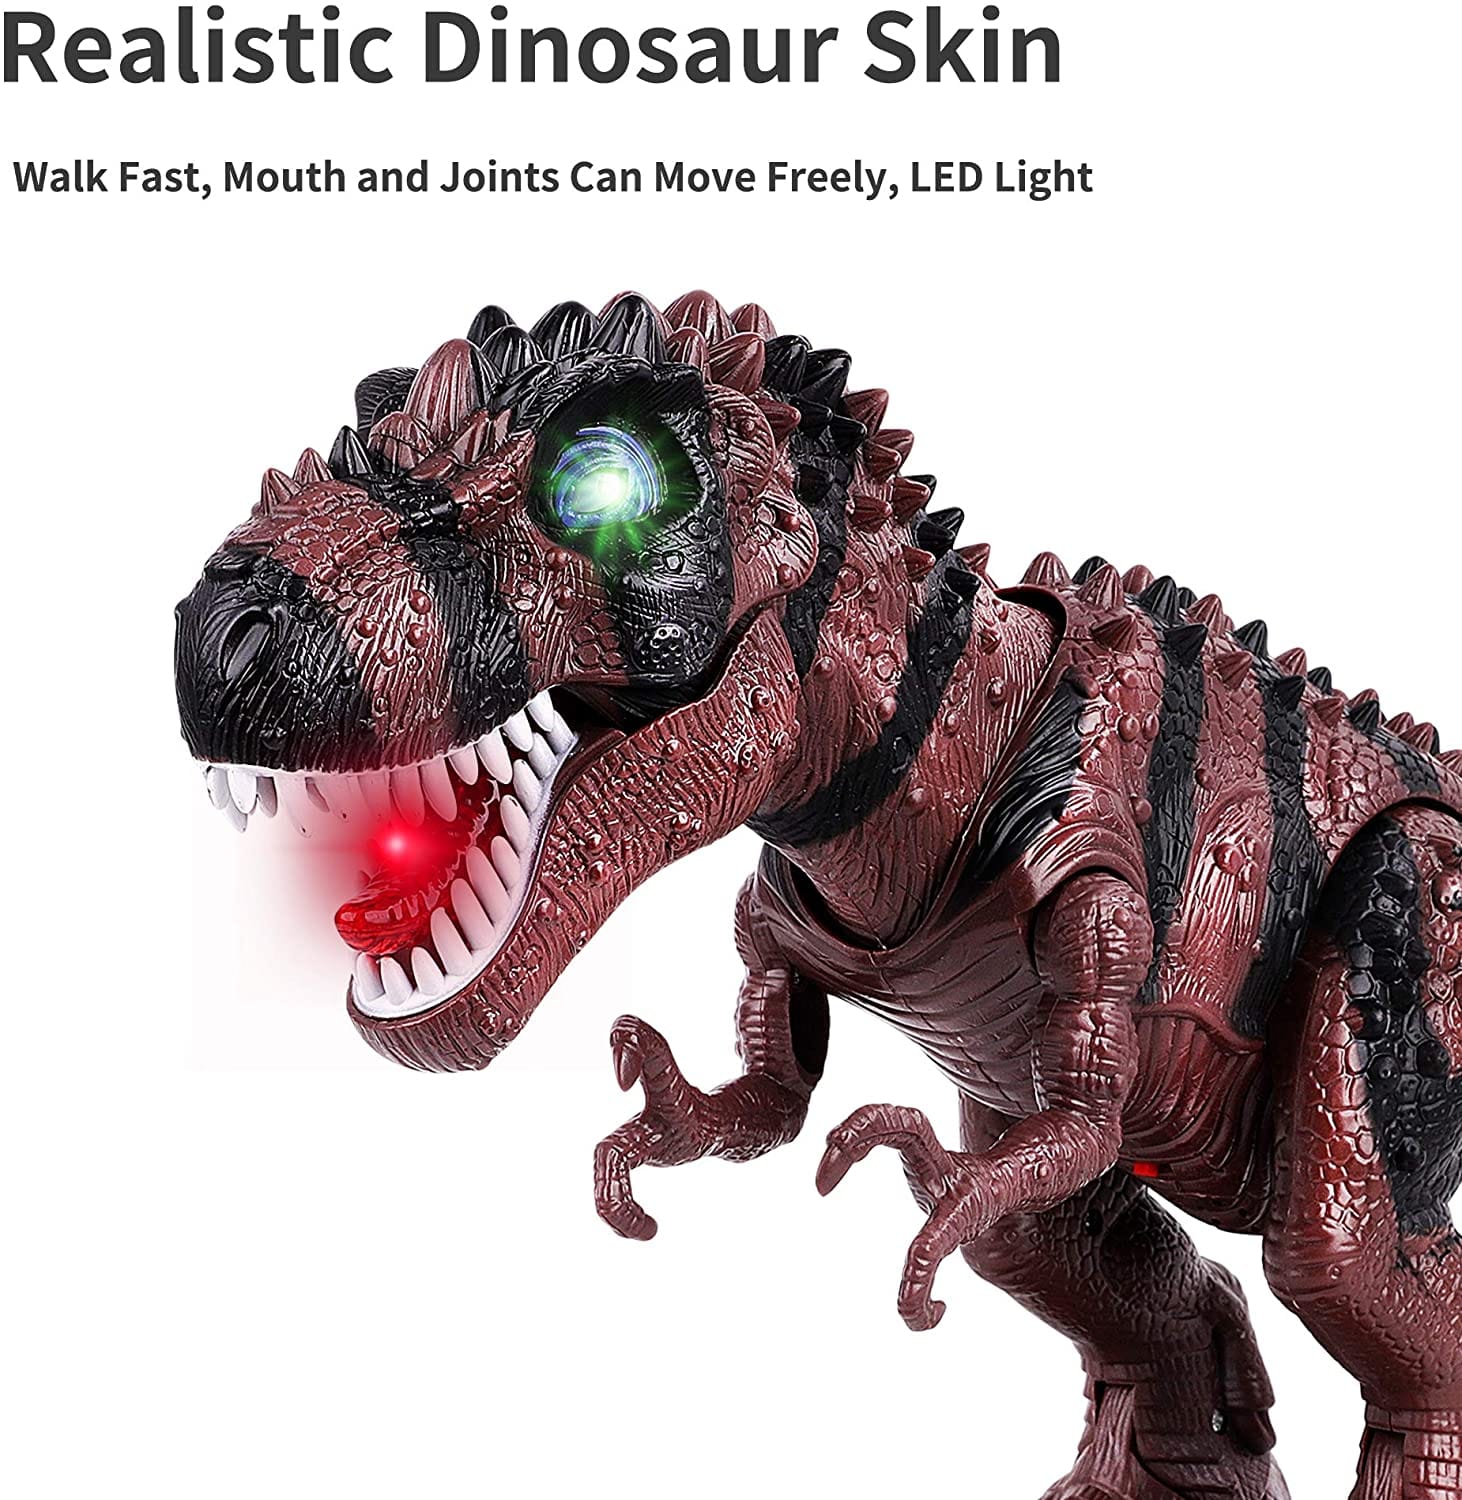 Dinosaurio T-Rex con luz, sonido, movimiento de caminar y acción de cola oscilante